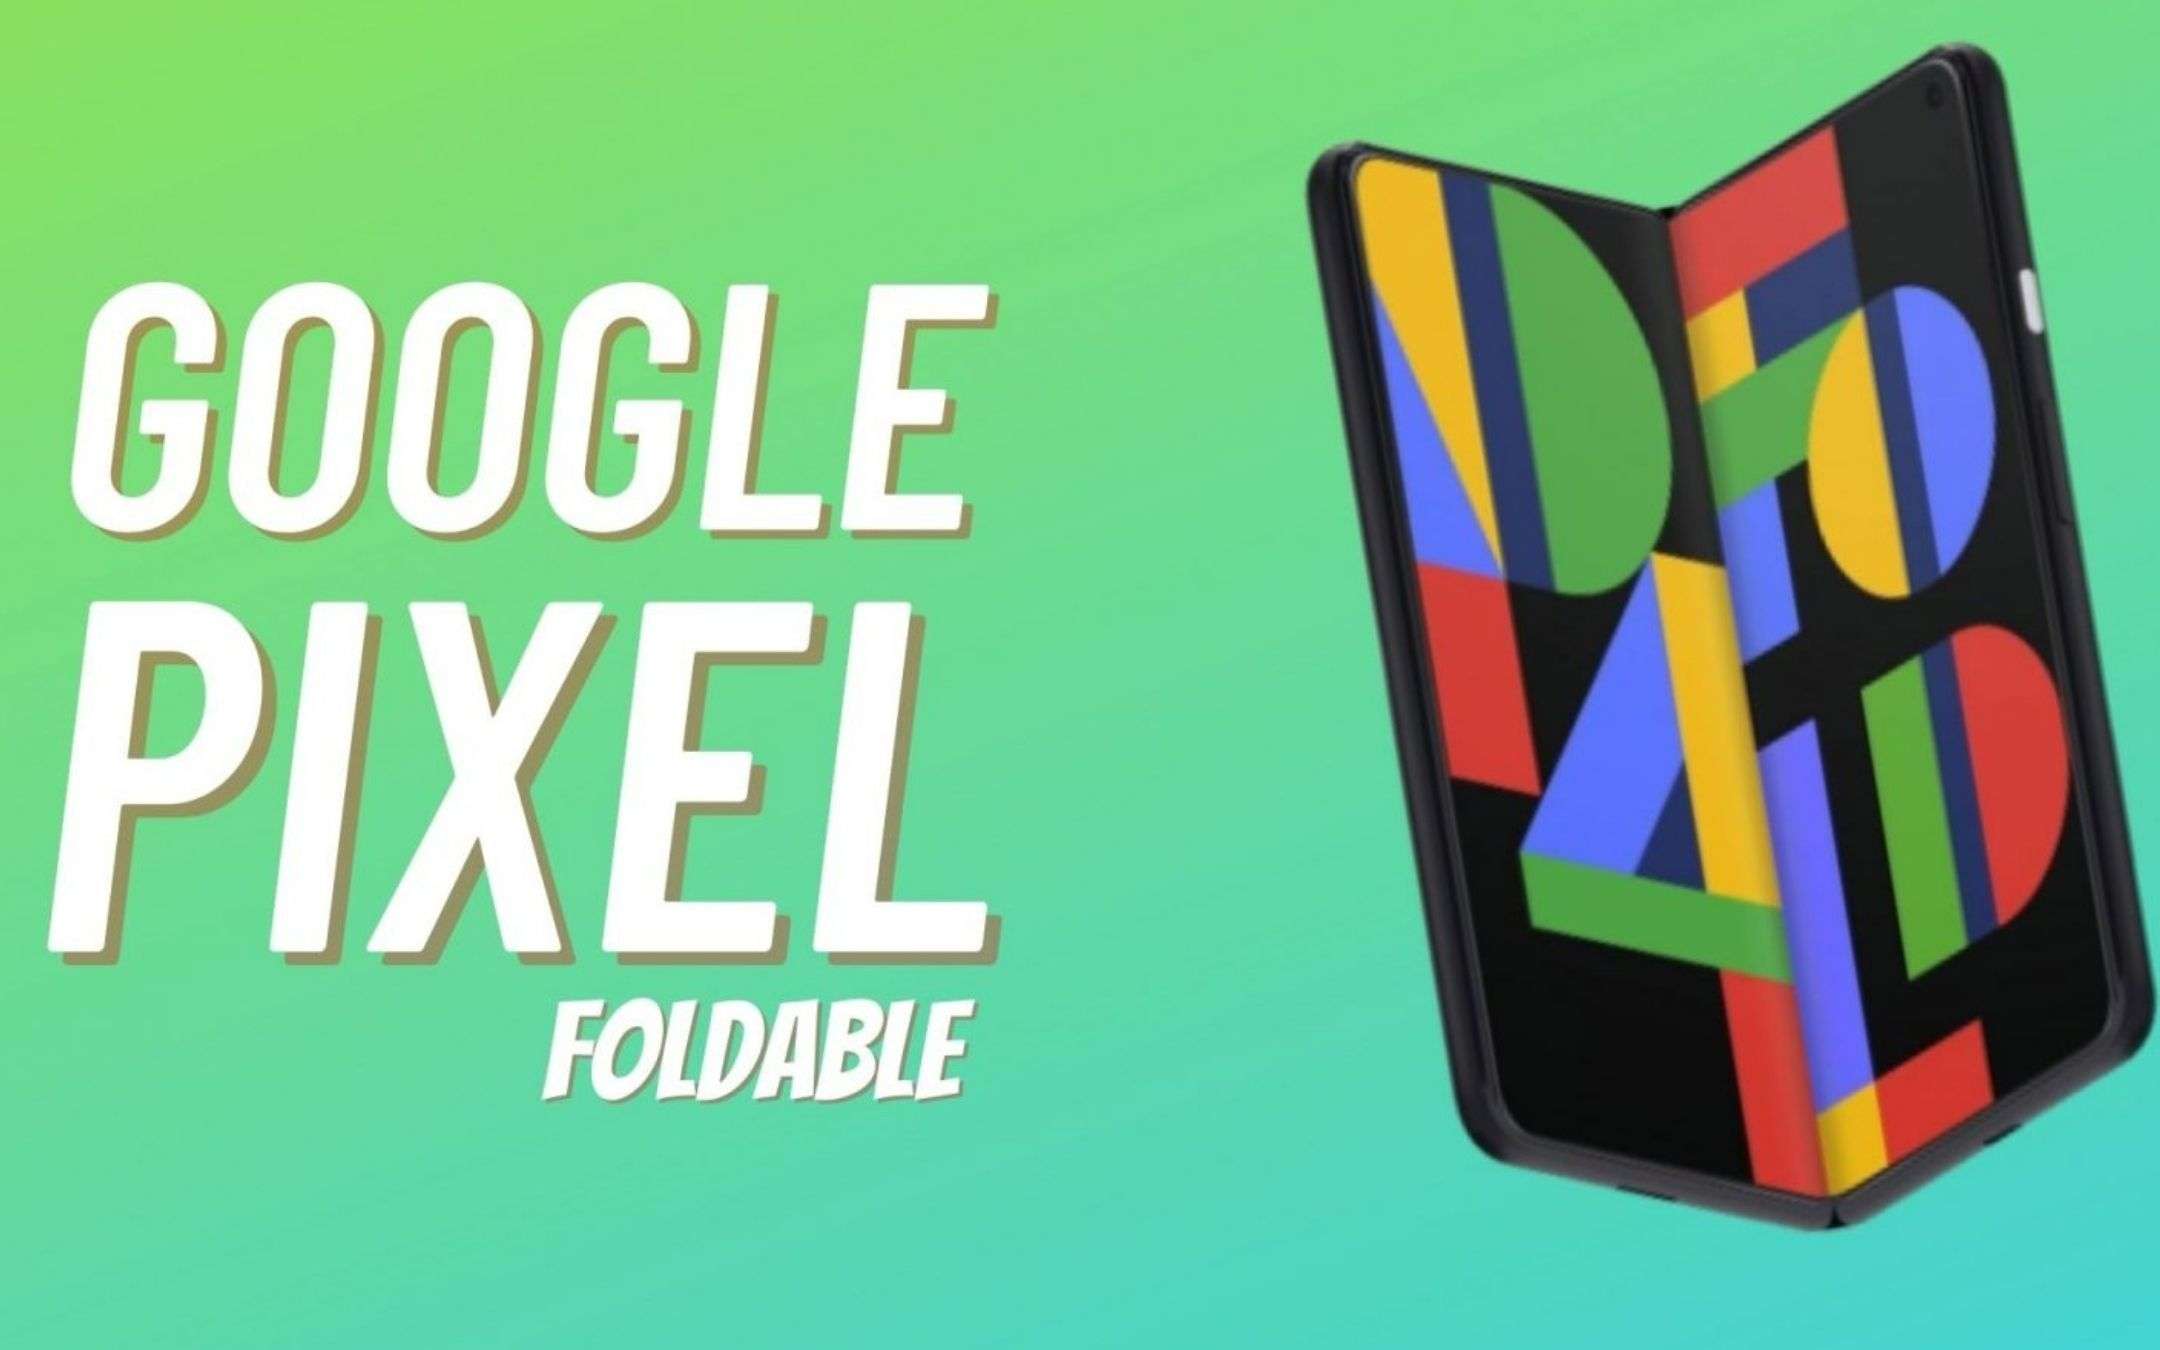 Google Pixel Fold arriverà entro fine anno, nuova conferma